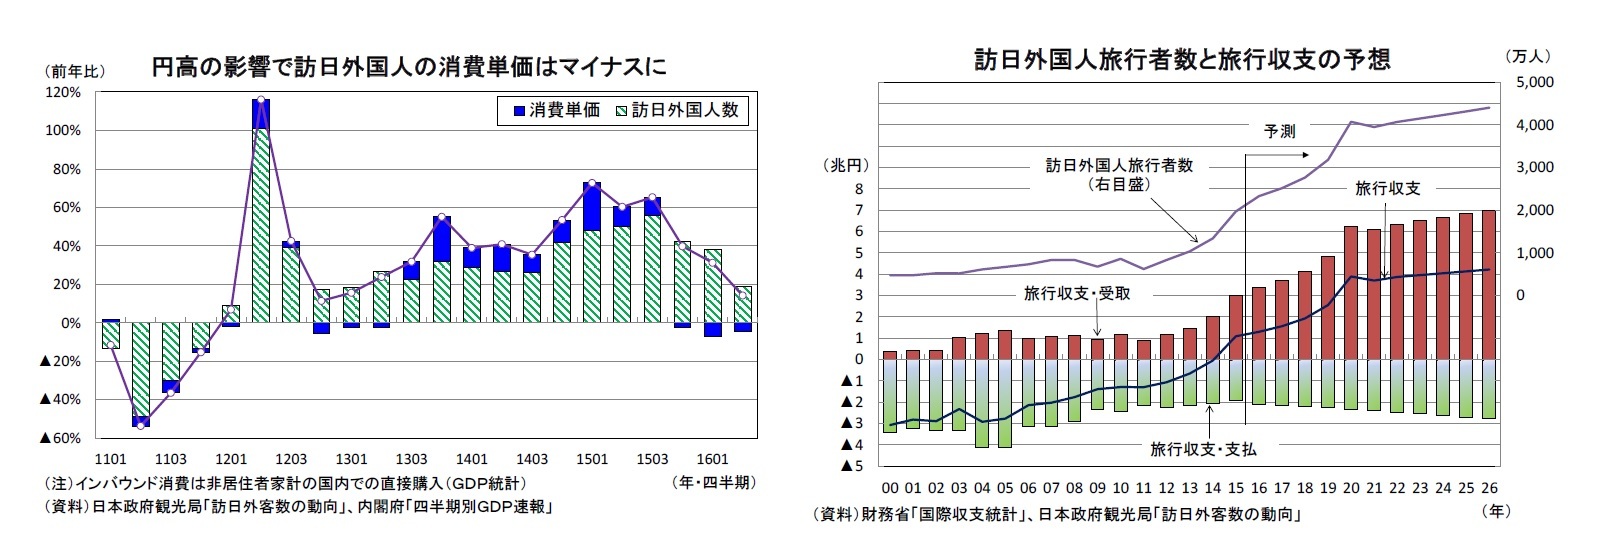 円高の影響で訪日外国人の消費単価はマイナスに/訪日外国人旅行者数と旅行収支の予想